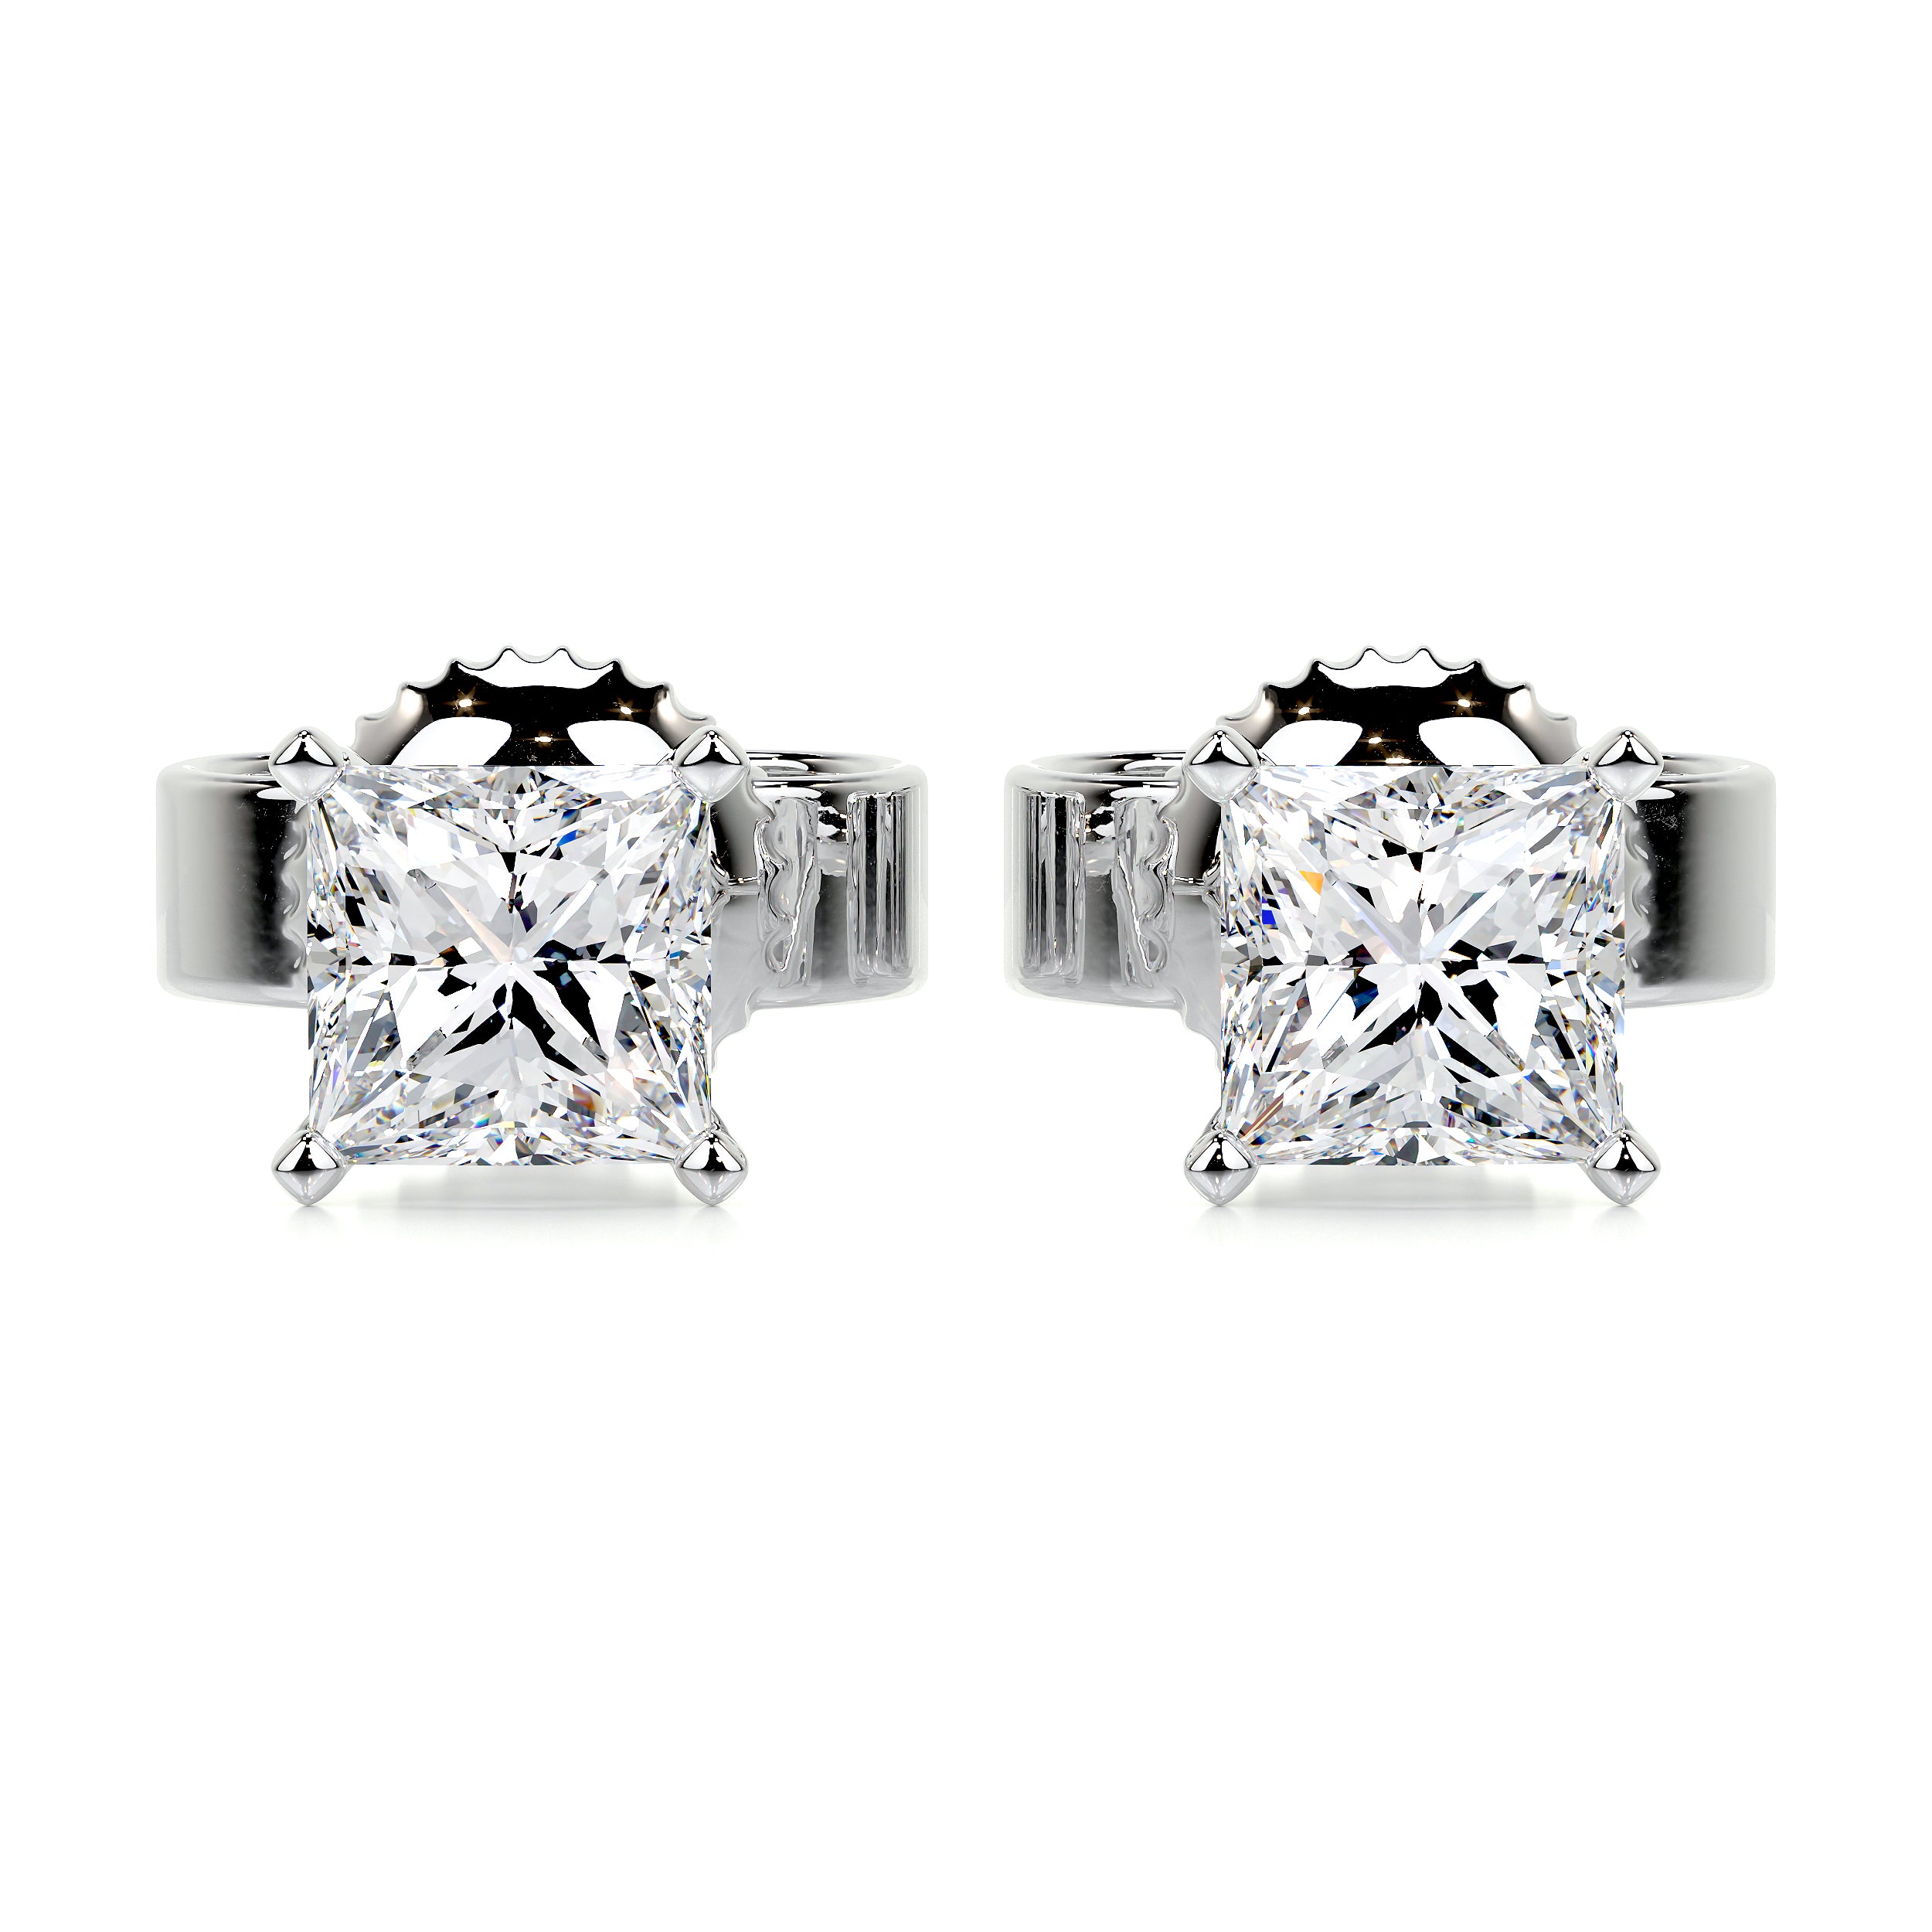 Jamie Diamond Earrings -18K White Gold